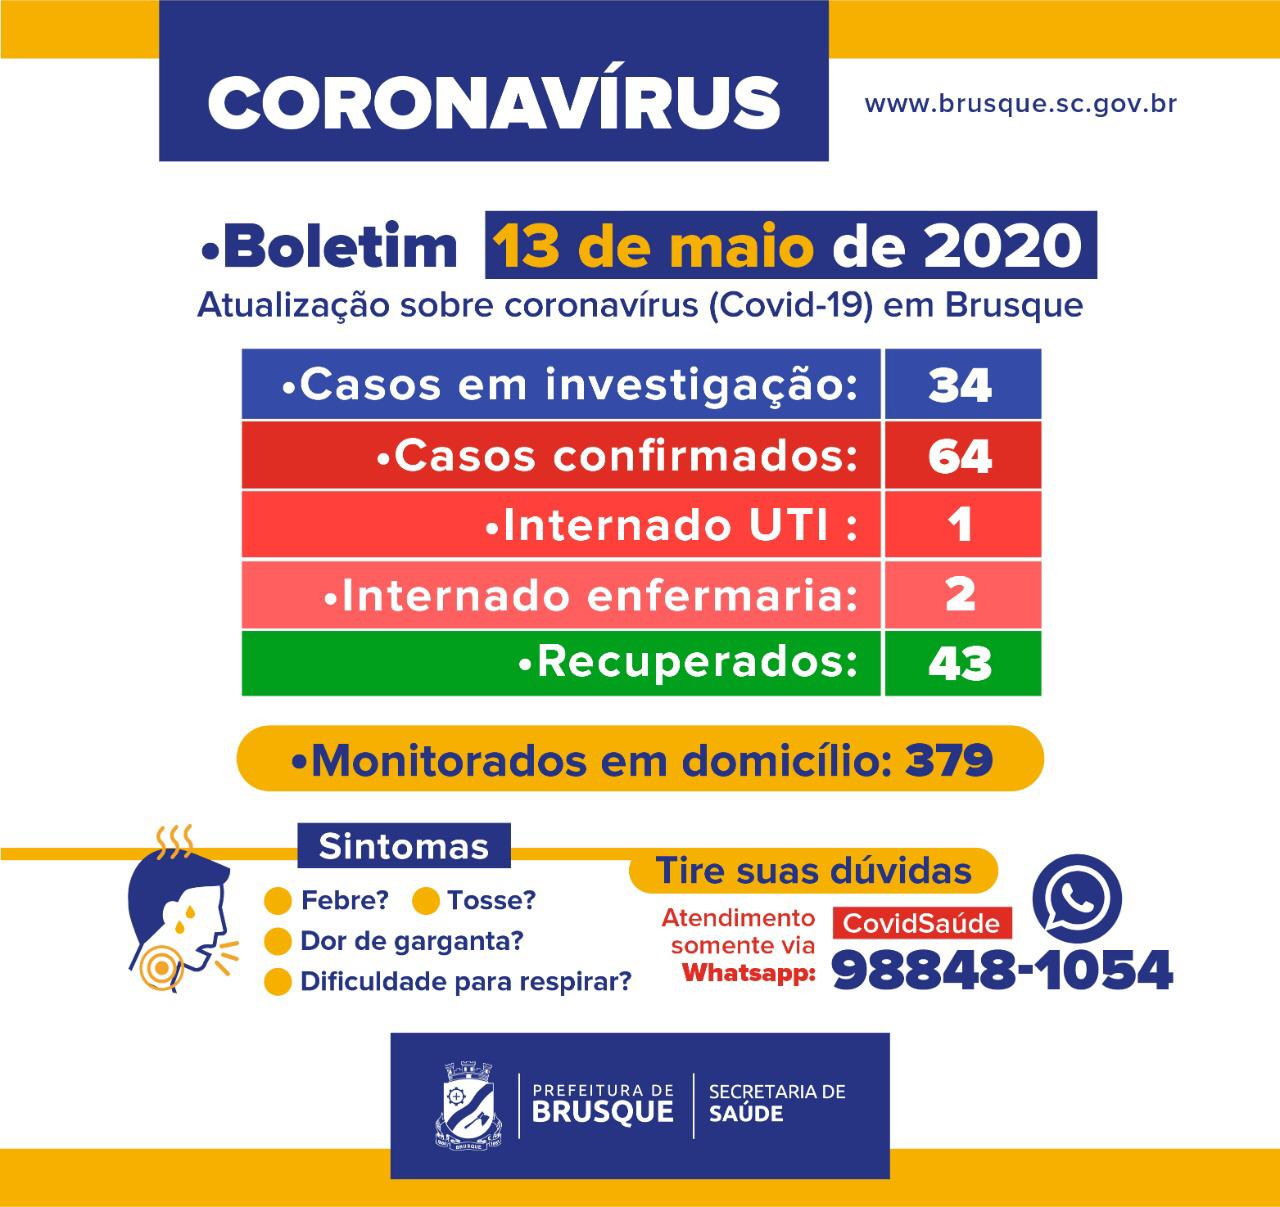 Brusque registra 64 casos do novo coronavírus